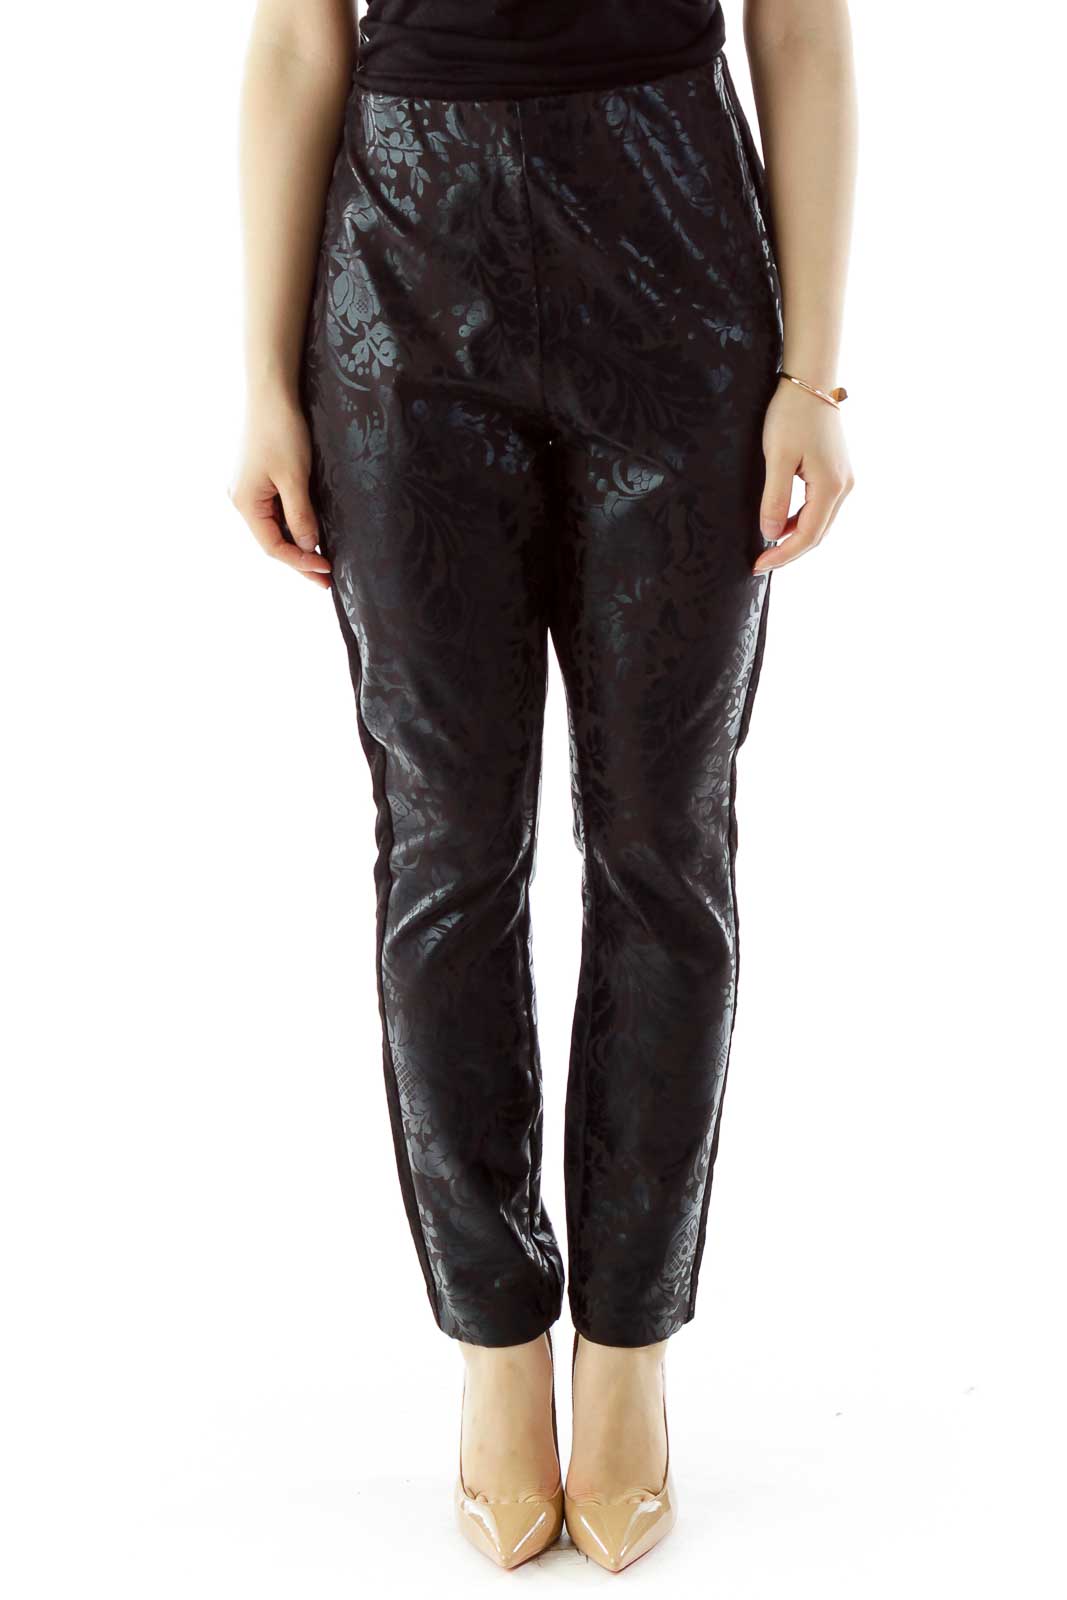 Black Flower Velvet Elastic High-Waisted Pants Front